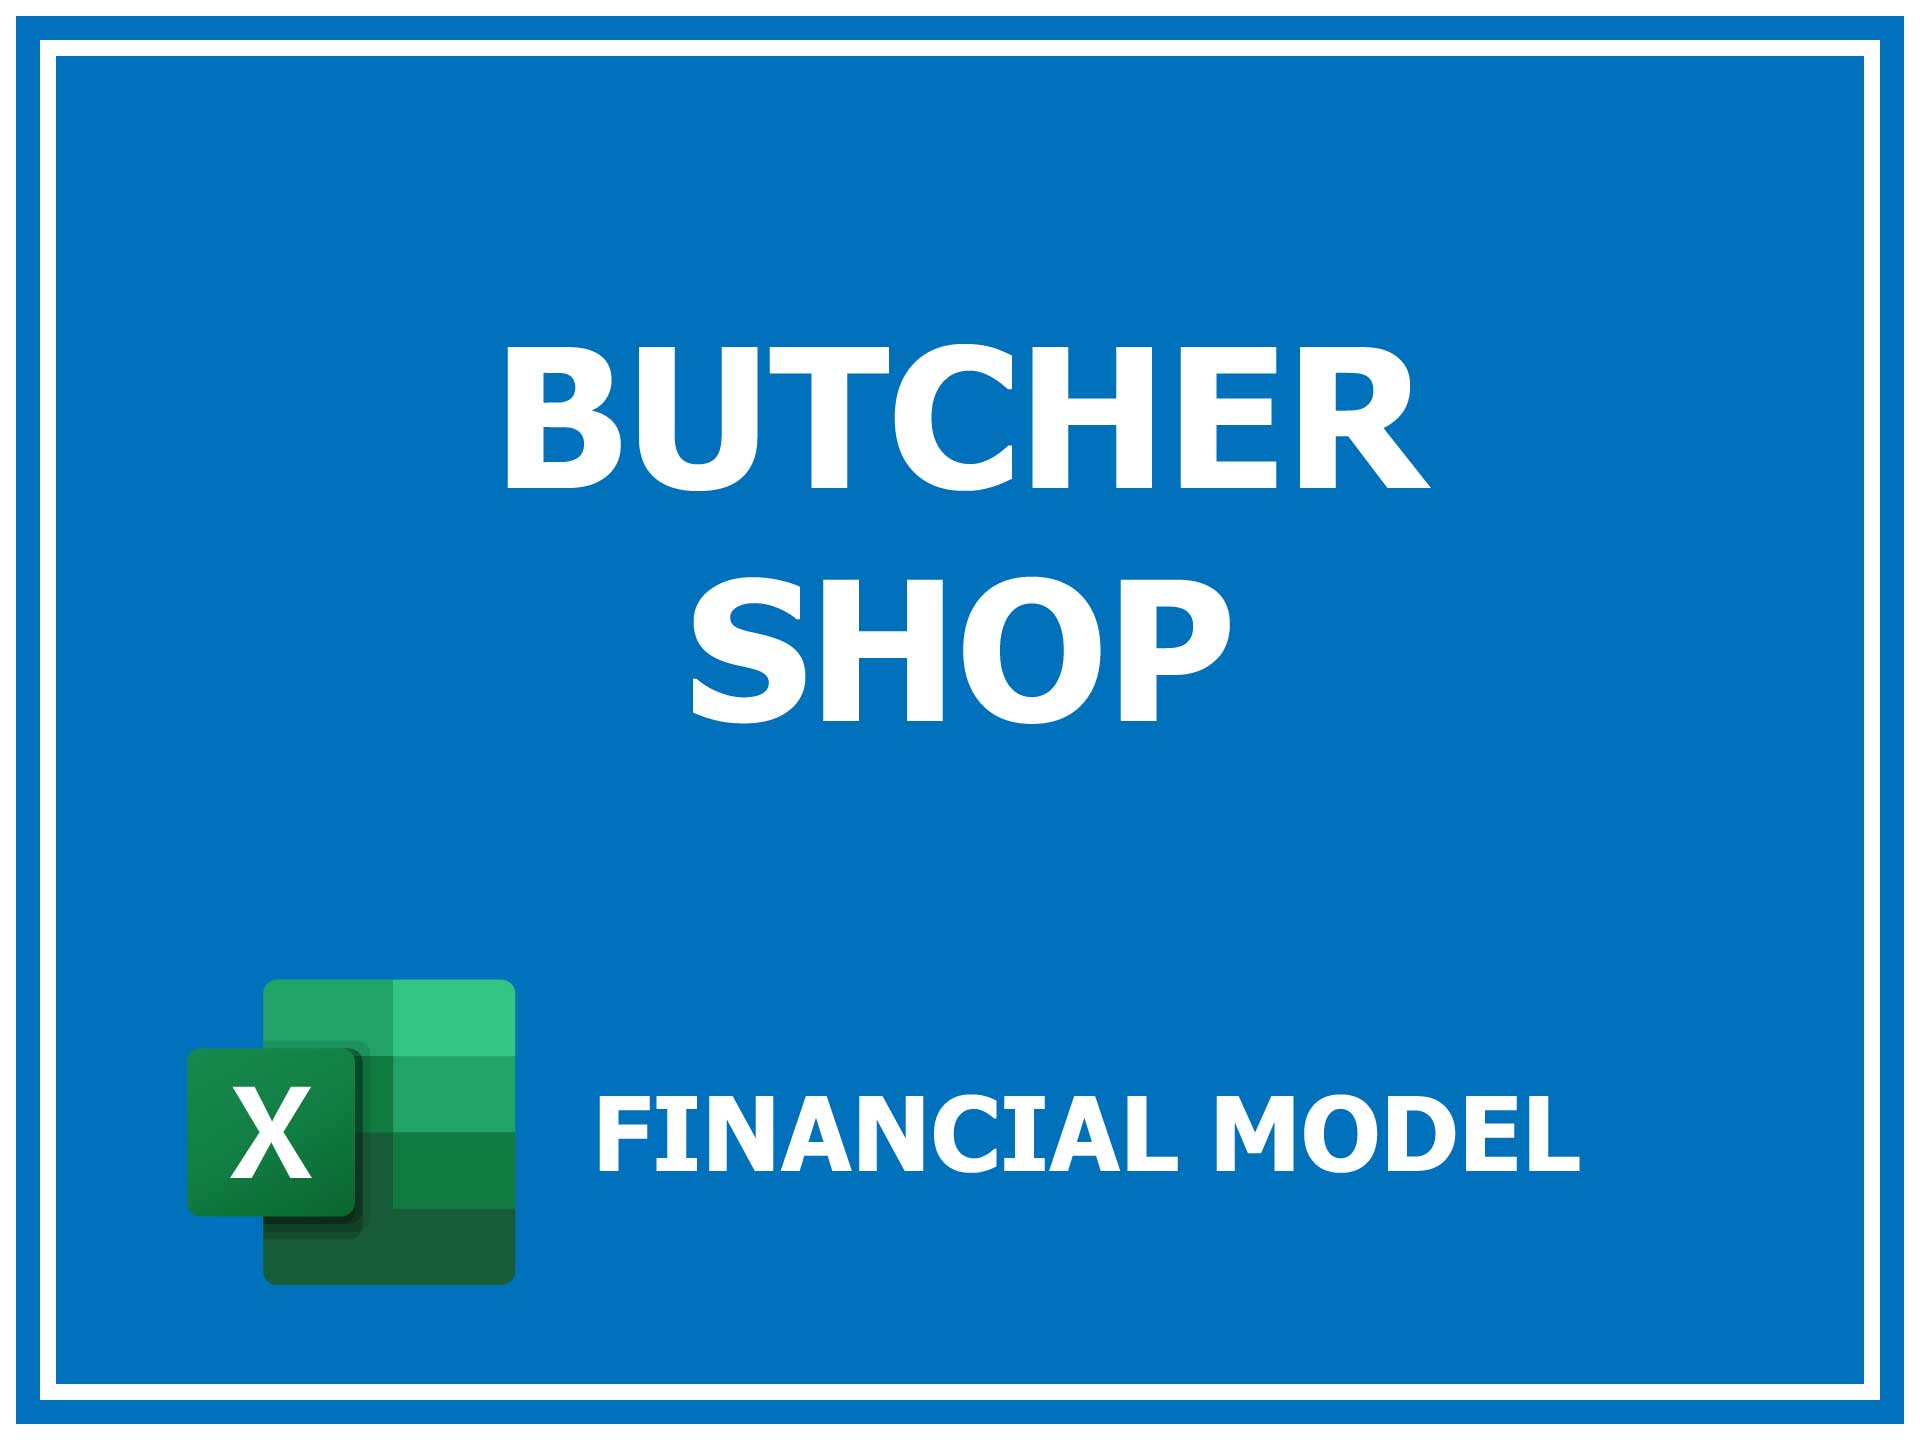 Butcher Shop